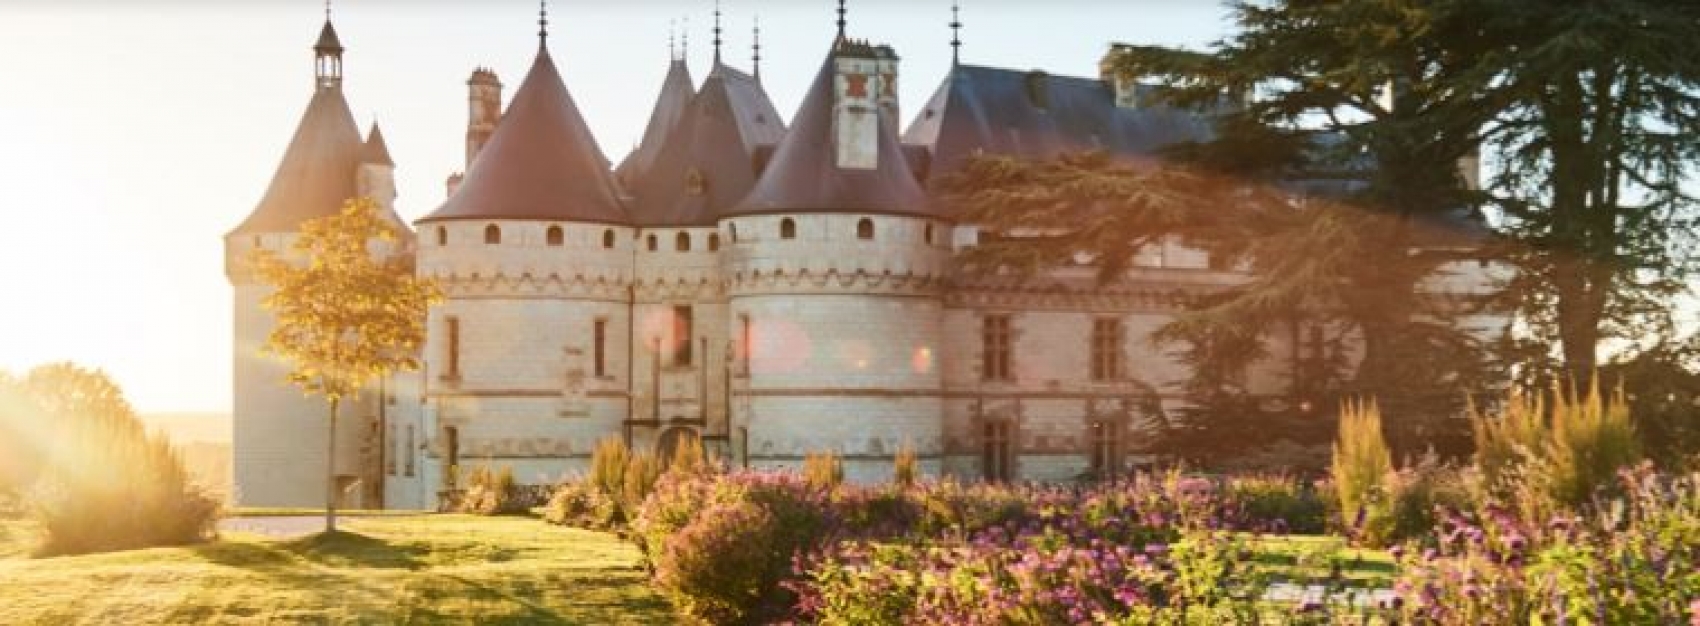 Son et Lumière au Château royal de Blois